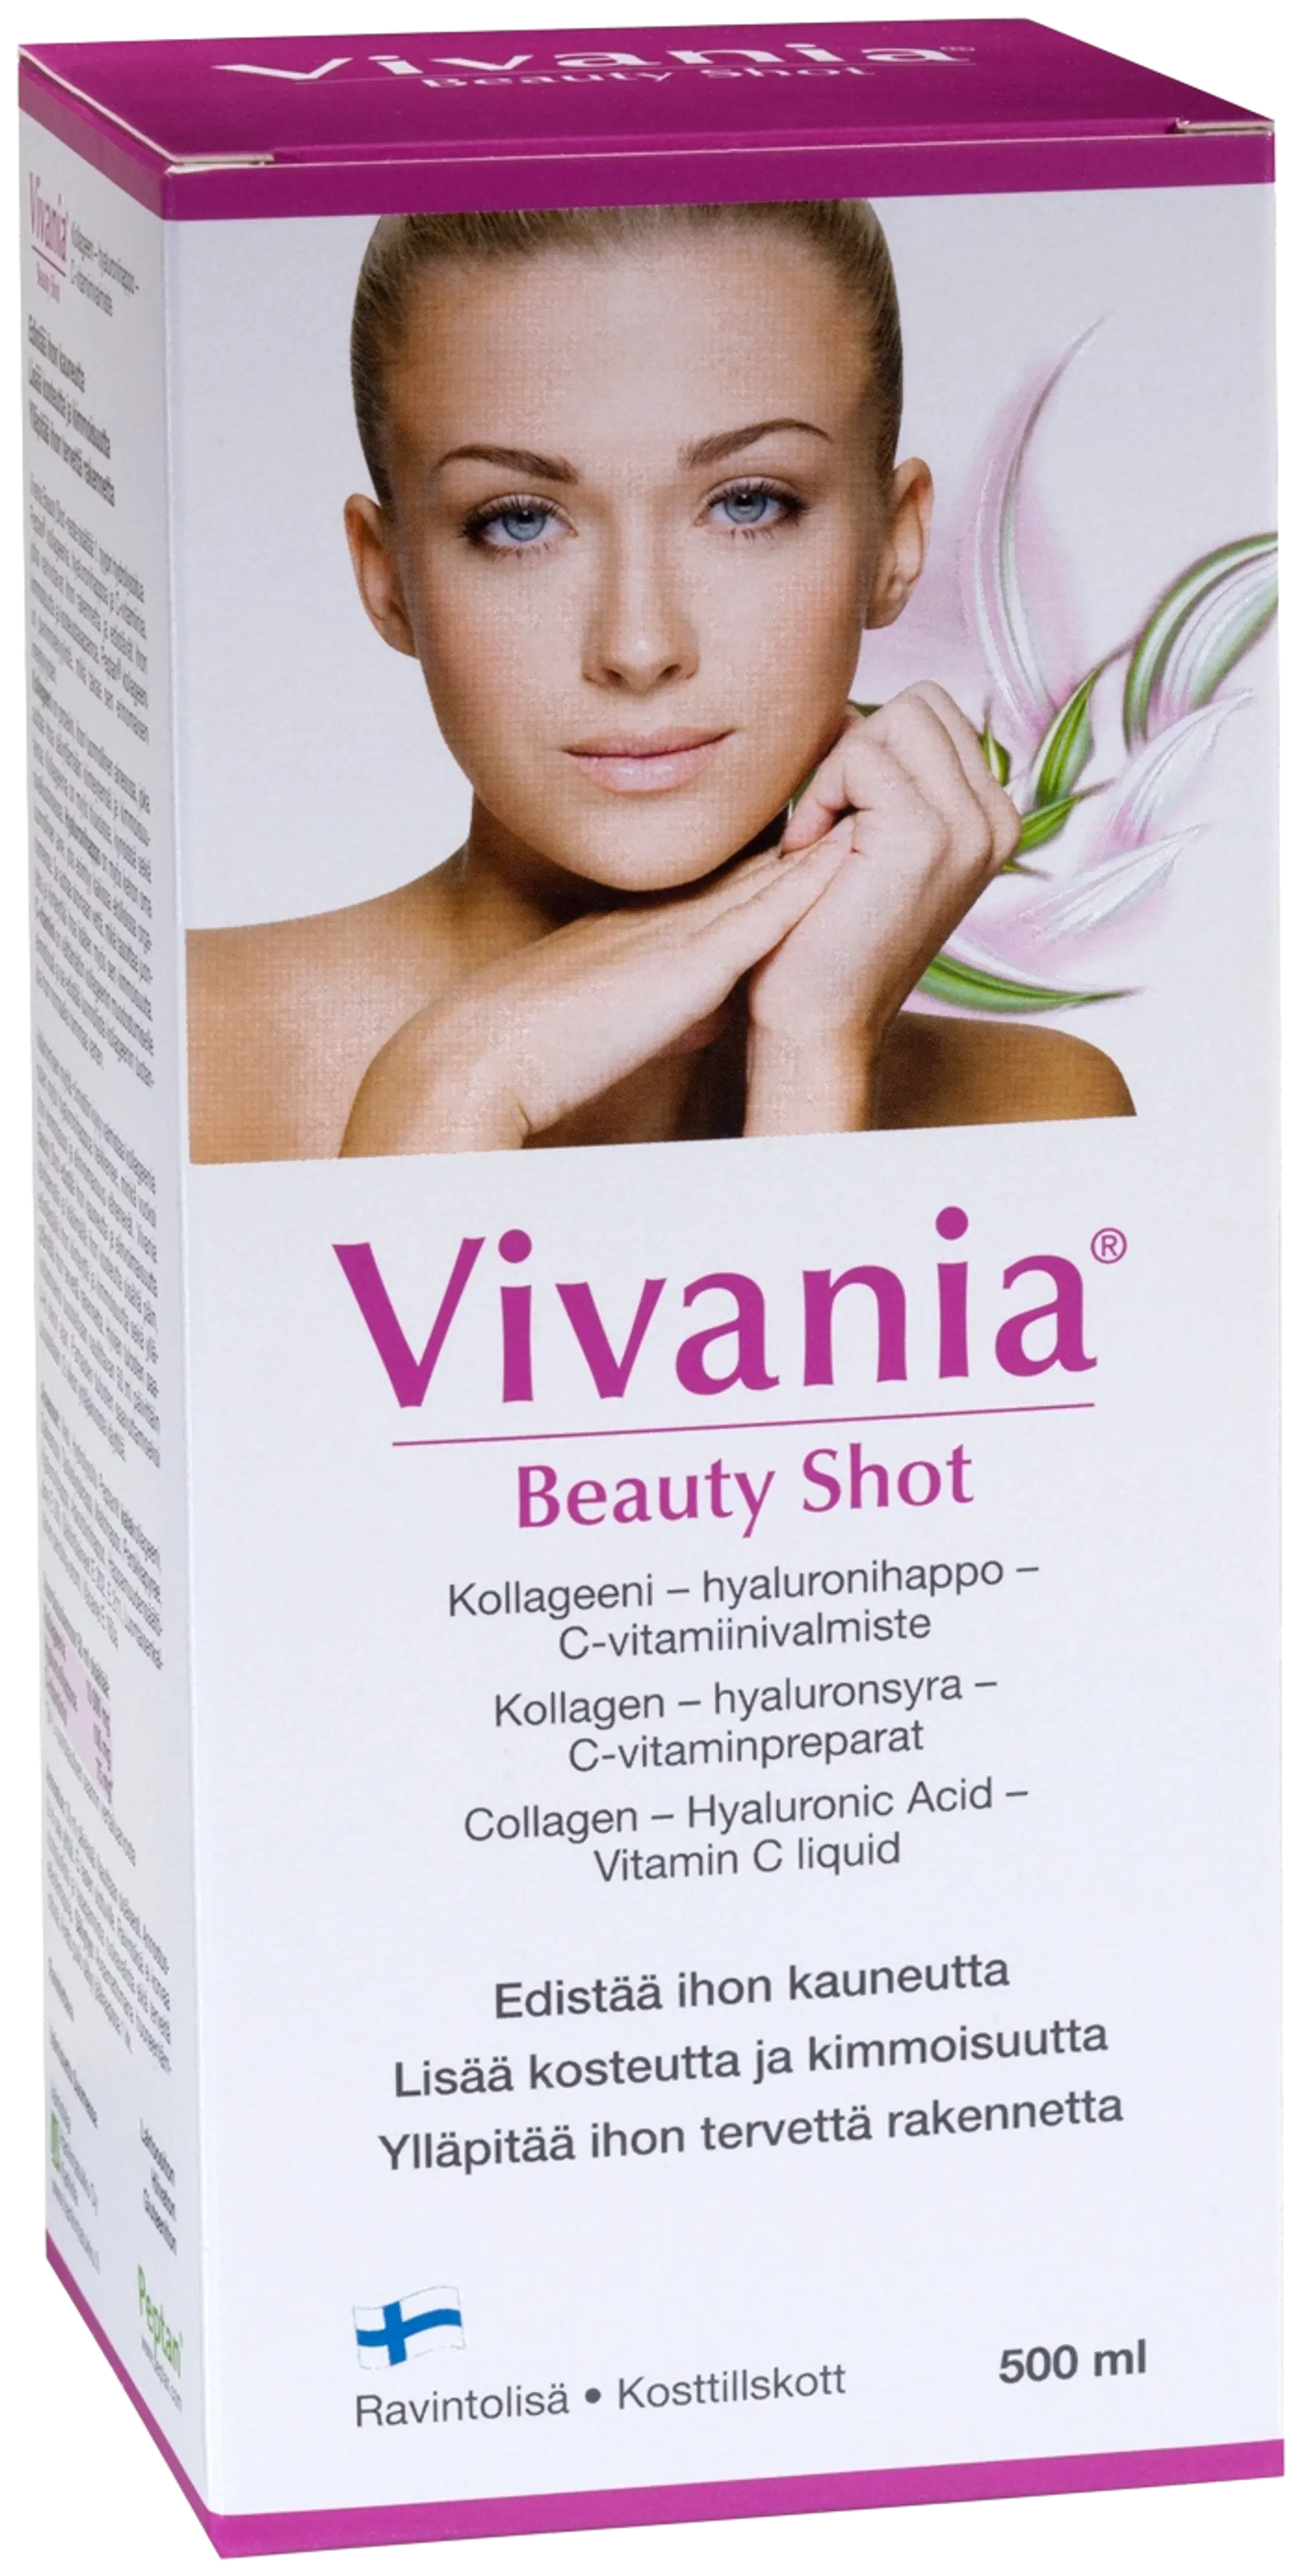 Vivania Beauty Shot kollageeni-hyaluronihappo-C-vitamiinivalmiste 500 ml